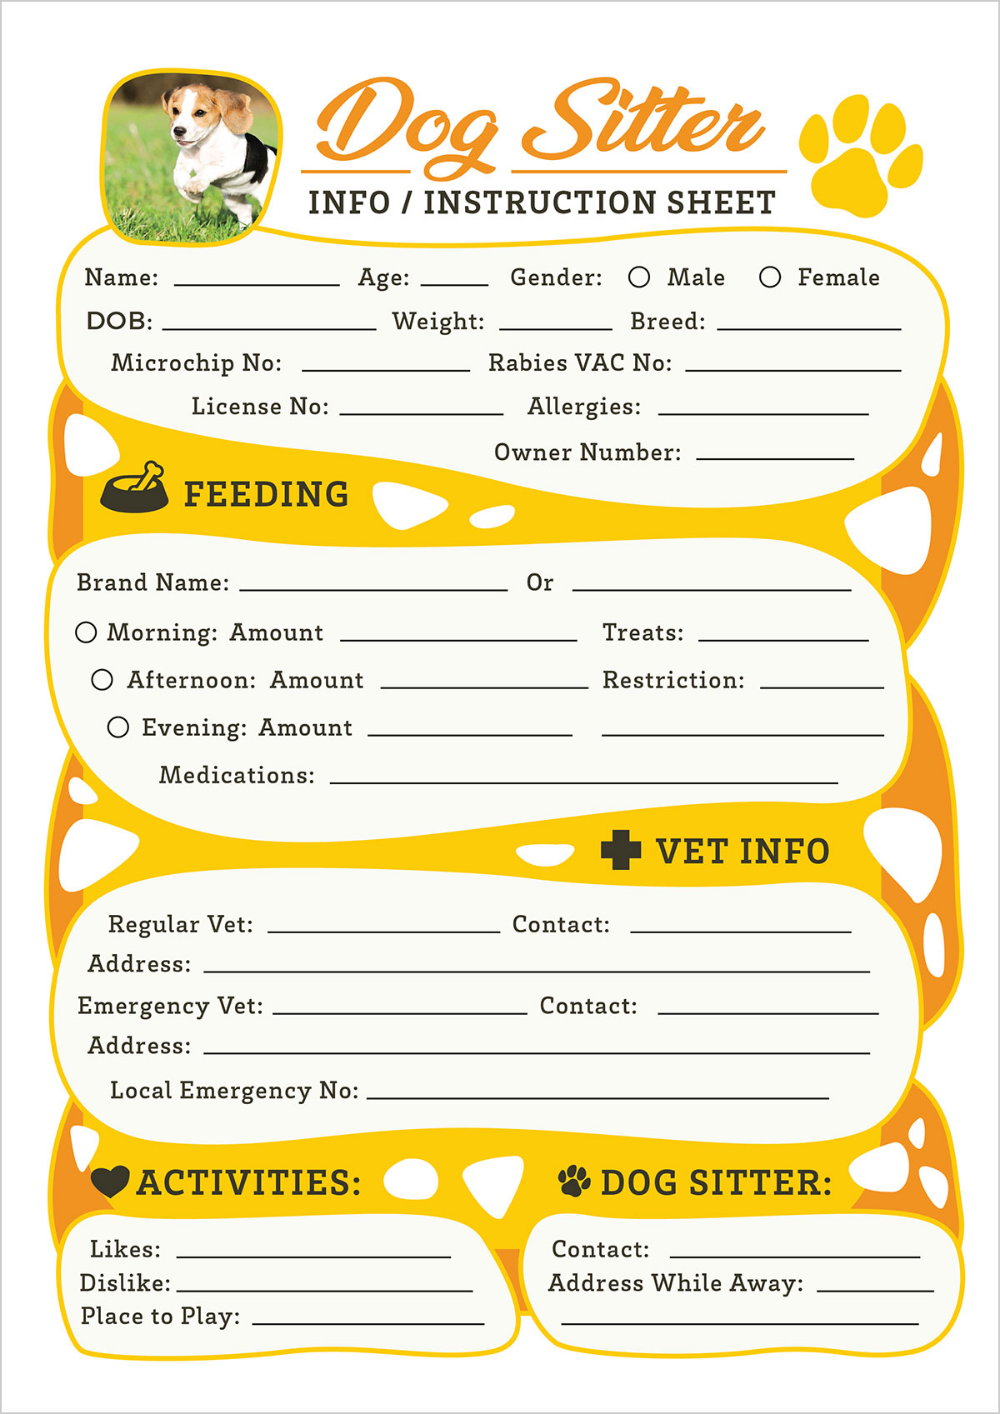 Free Dog Sitter Instruction Information Sheet Design Template Dog Daycare Business Dog Sitting Business Pet Sitter Instructions